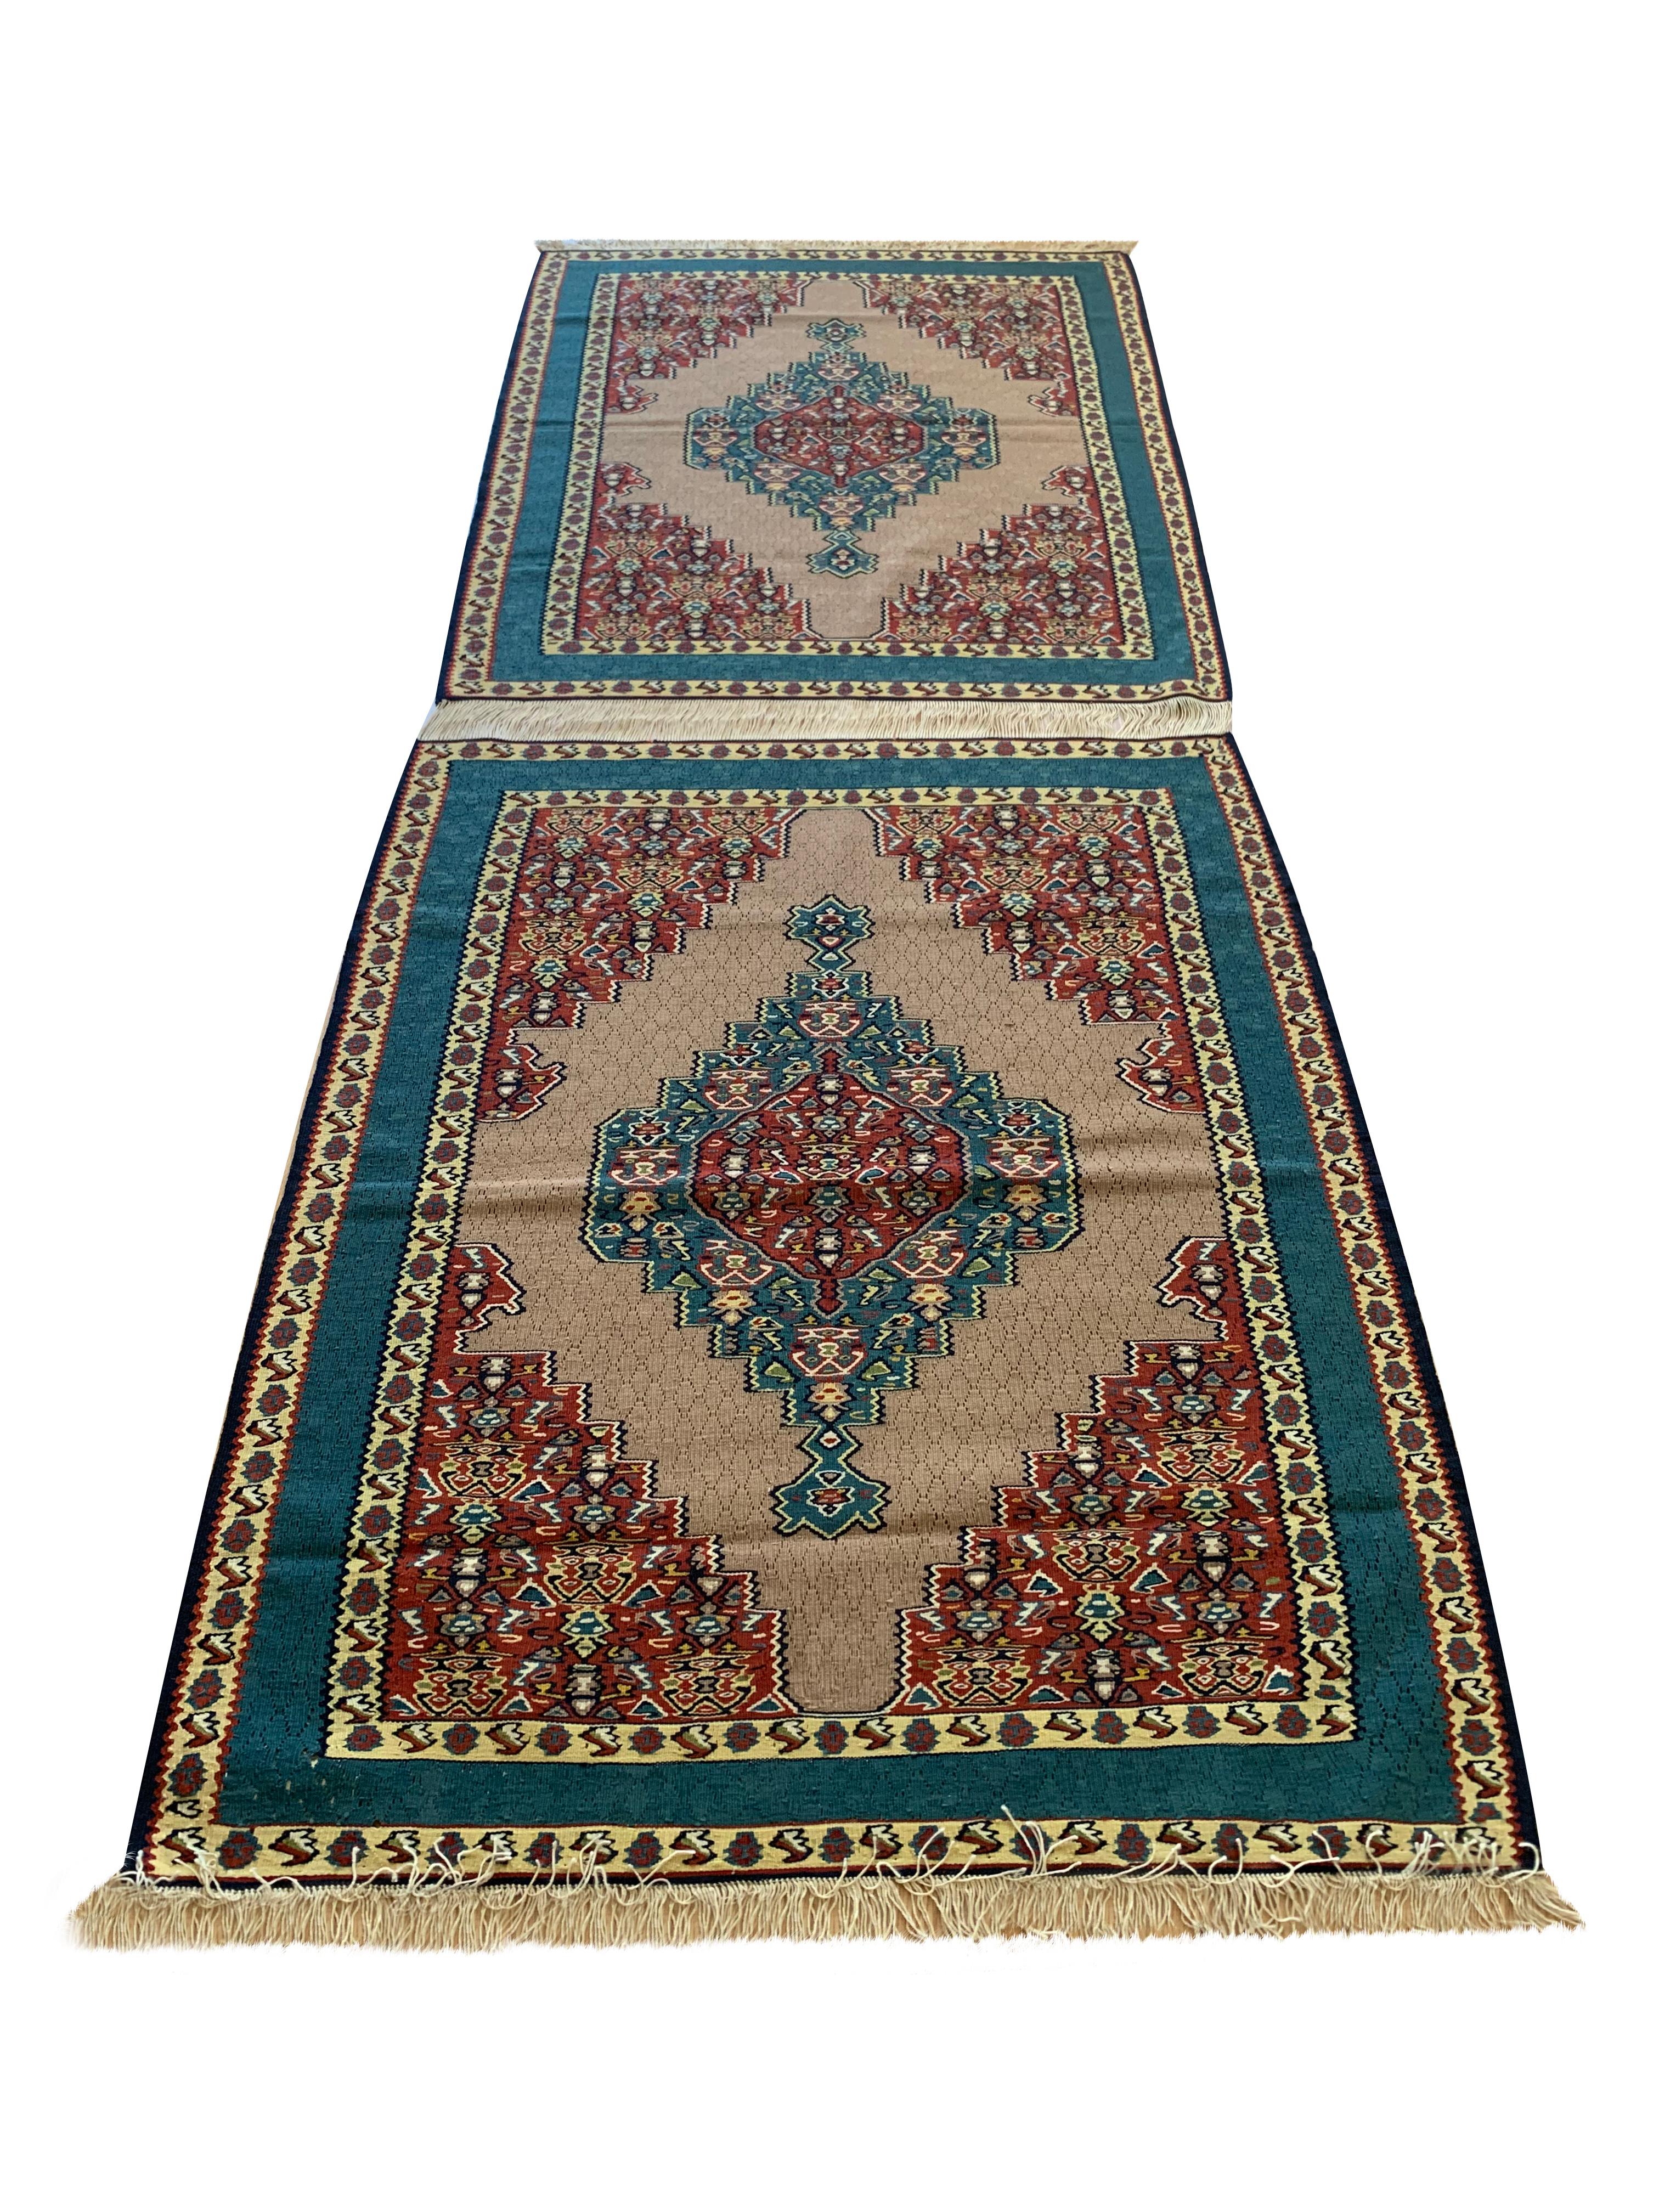 Ces superbes tapis en laine faits à la main sont des tapis kilim kurdes neufs tissés au début des années 2000, vers 2010. Le motif central est très décoratif, avec des médaillons géométriques tissés dans de larges accents rouges et indigo sur un